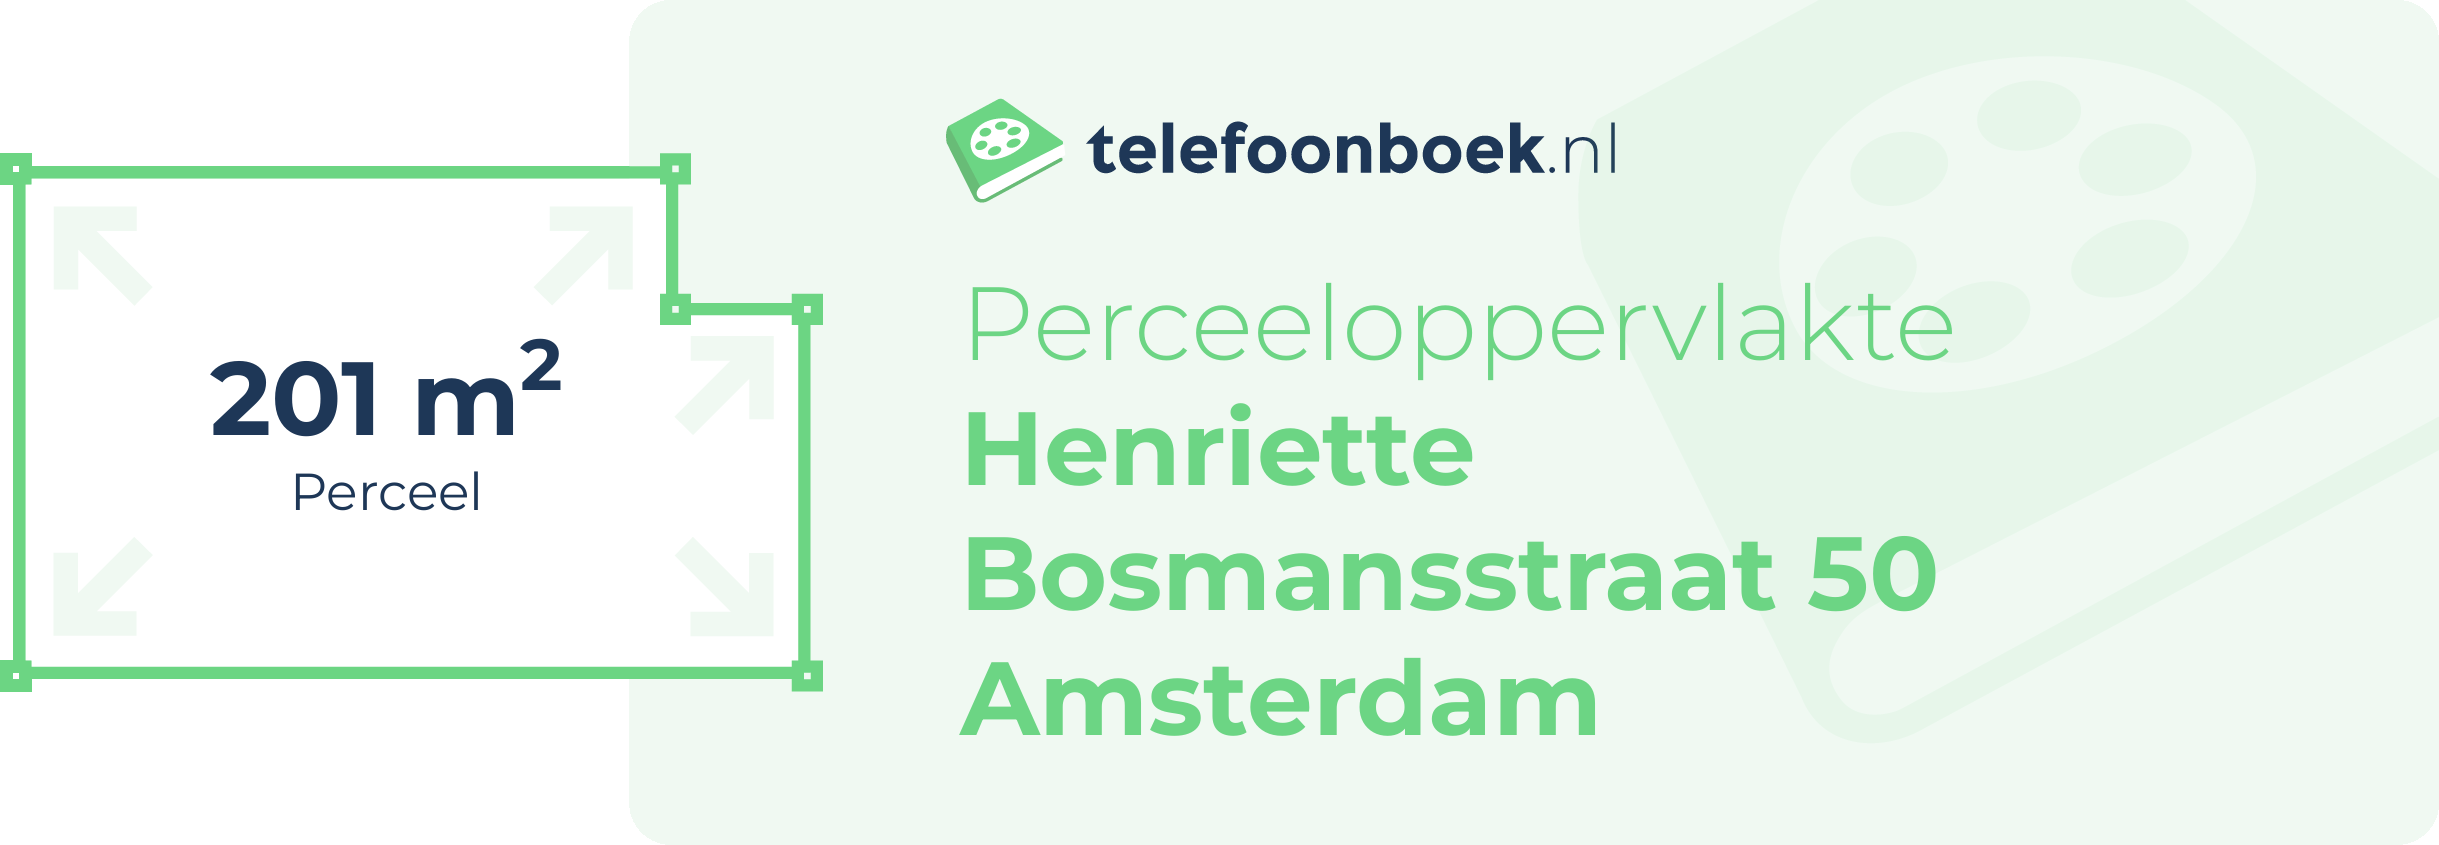 Perceeloppervlakte Henriette Bosmansstraat 50 Amsterdam